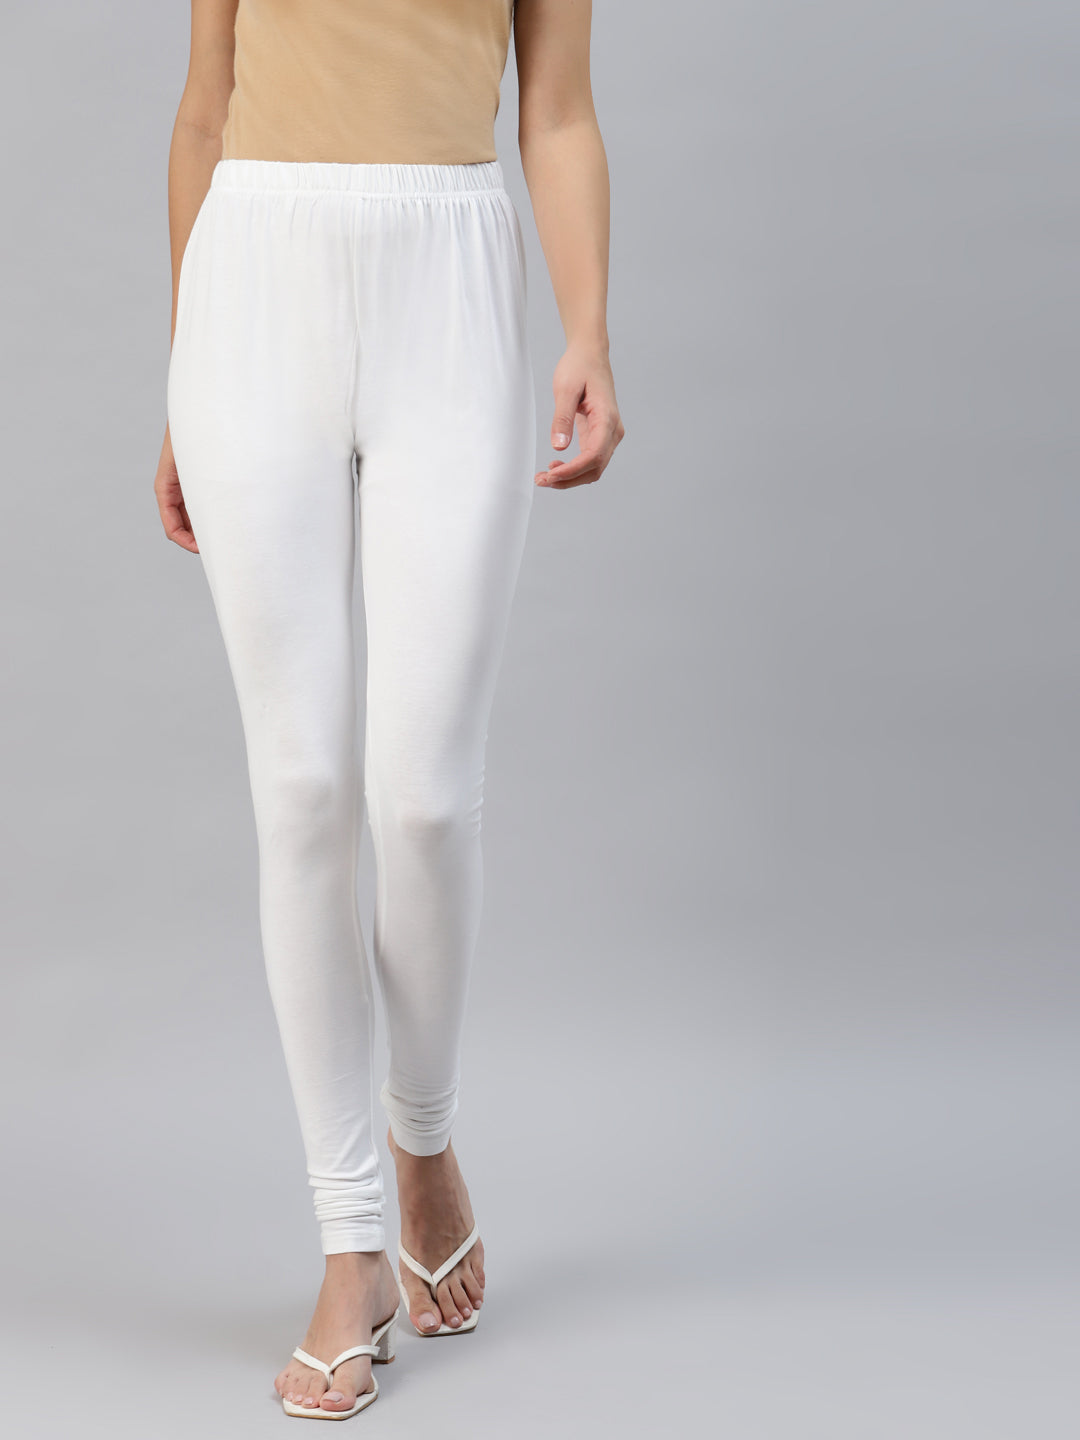 Women white solid churidar leggings